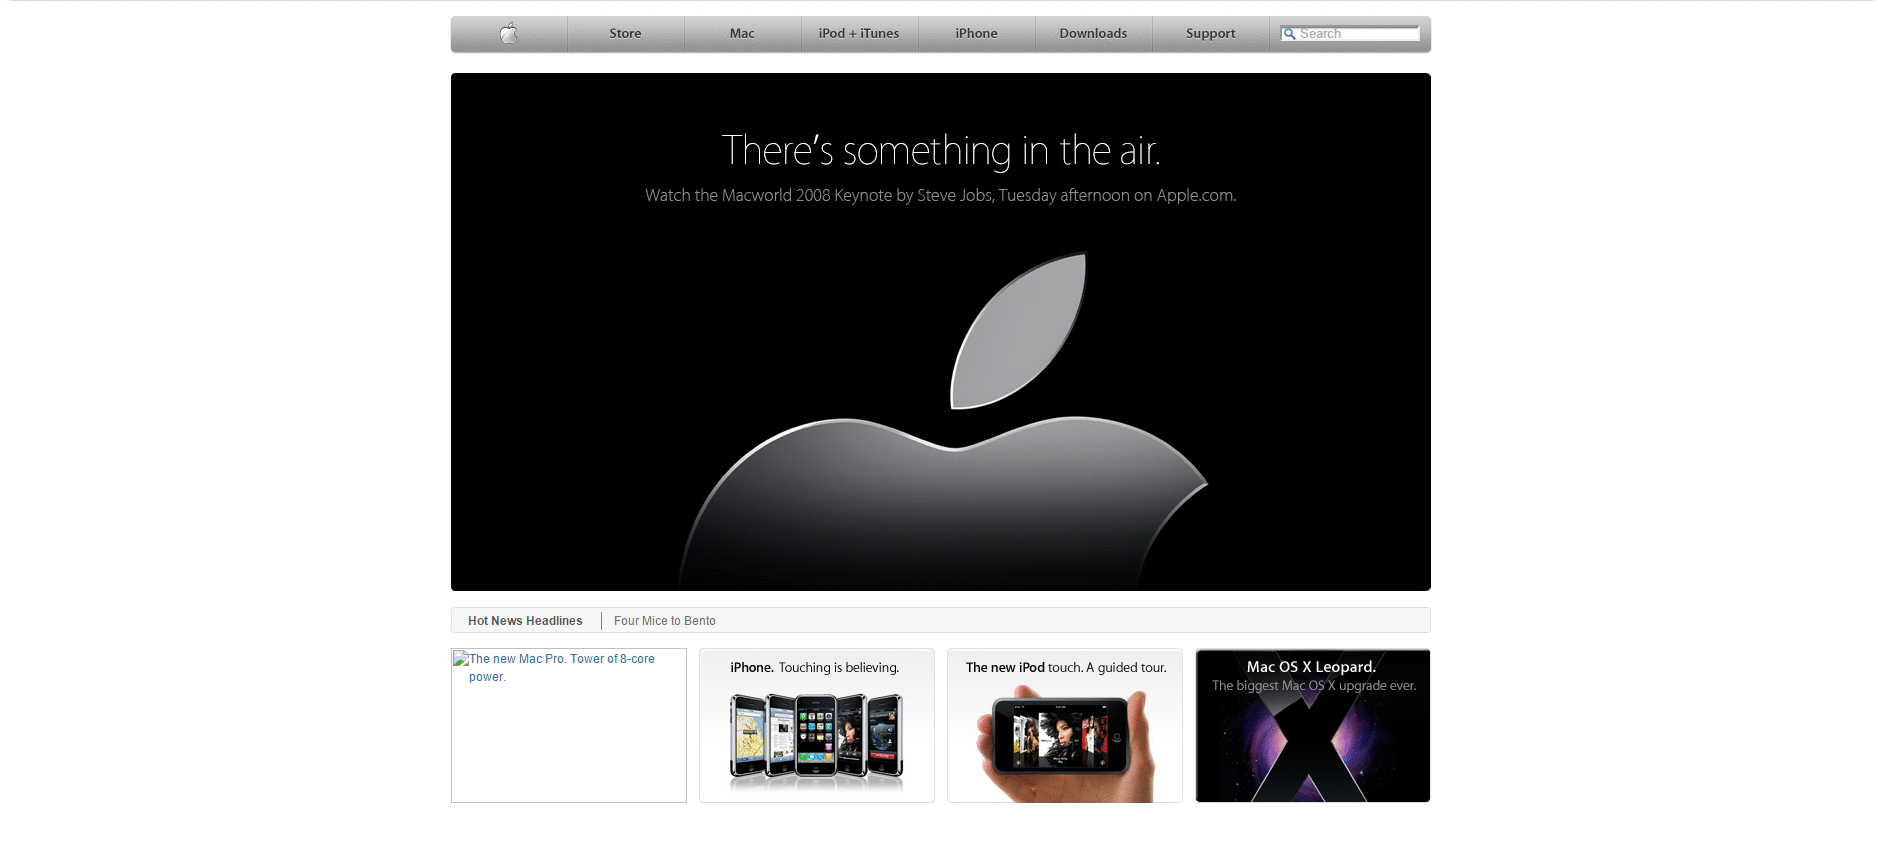 Website Design for apple.com in 2008